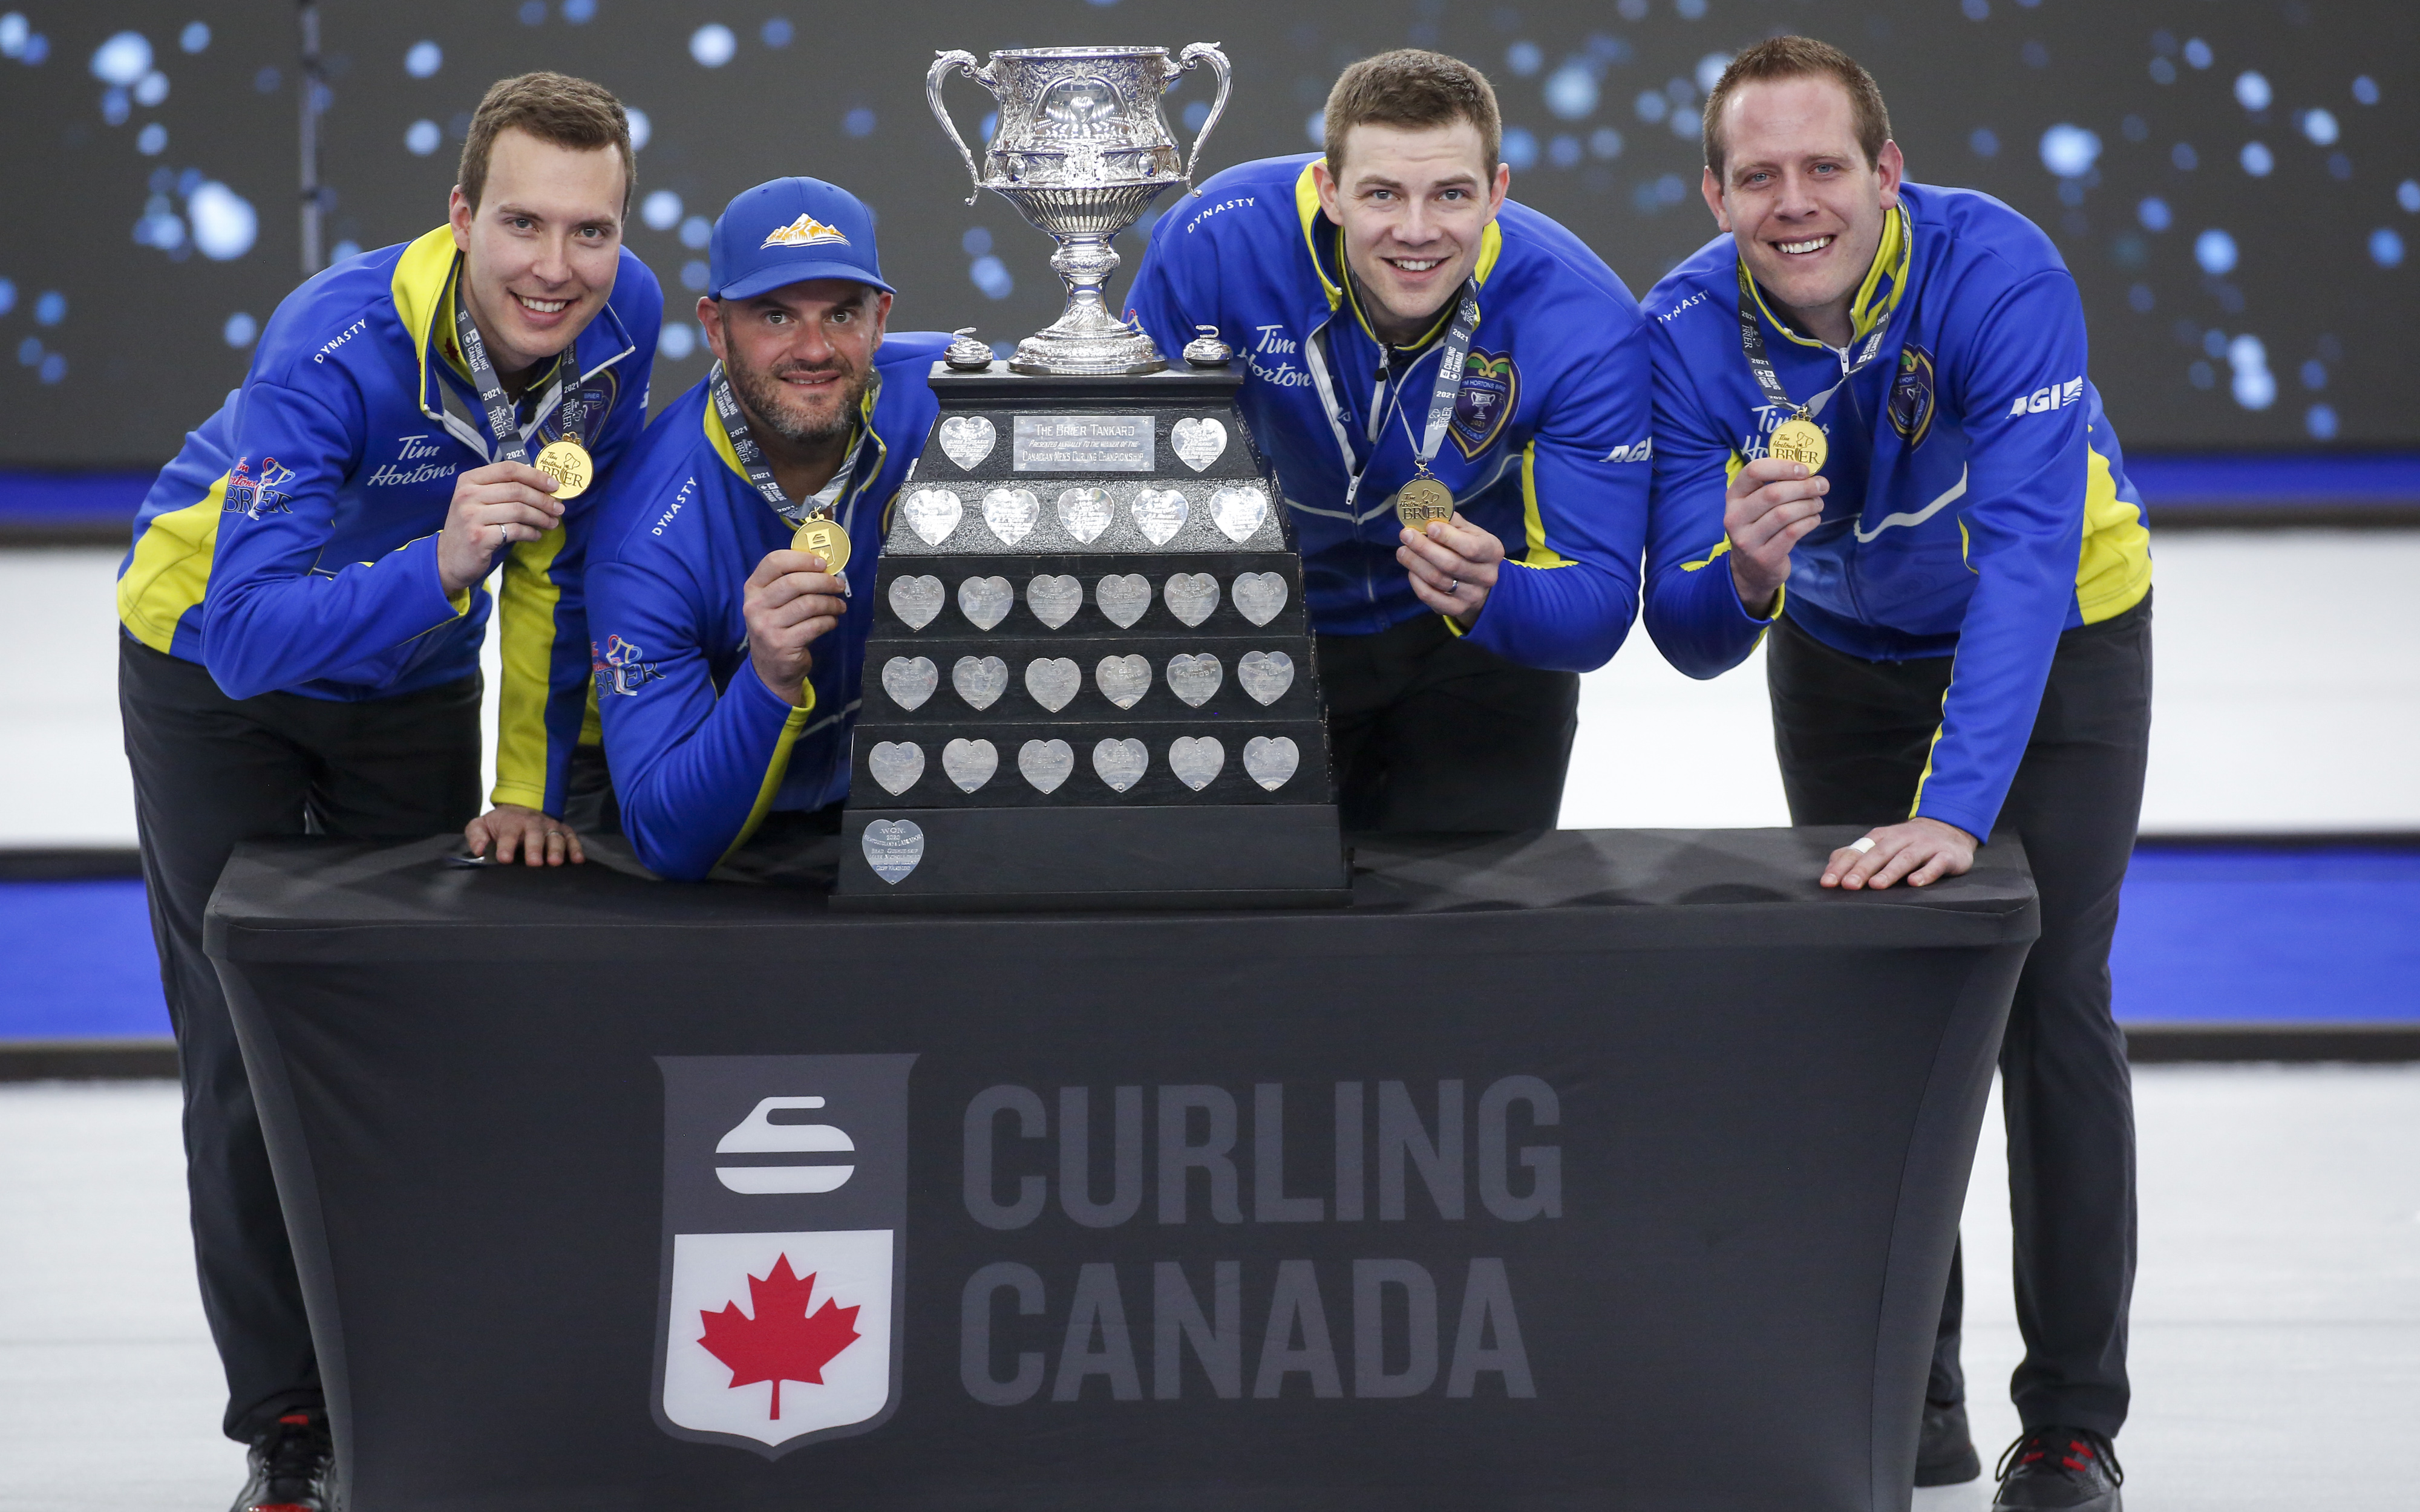 lag Alberta, vänster till höger, hoppa Brendan Bottcher, tredje Darren gjutning, andra Brad Thiessen, bly Karrick Martin fira besegra Team Wild Card två för att vinna Brier curling final i Calgary, Alta., Söndag, Mars 14, 2021.